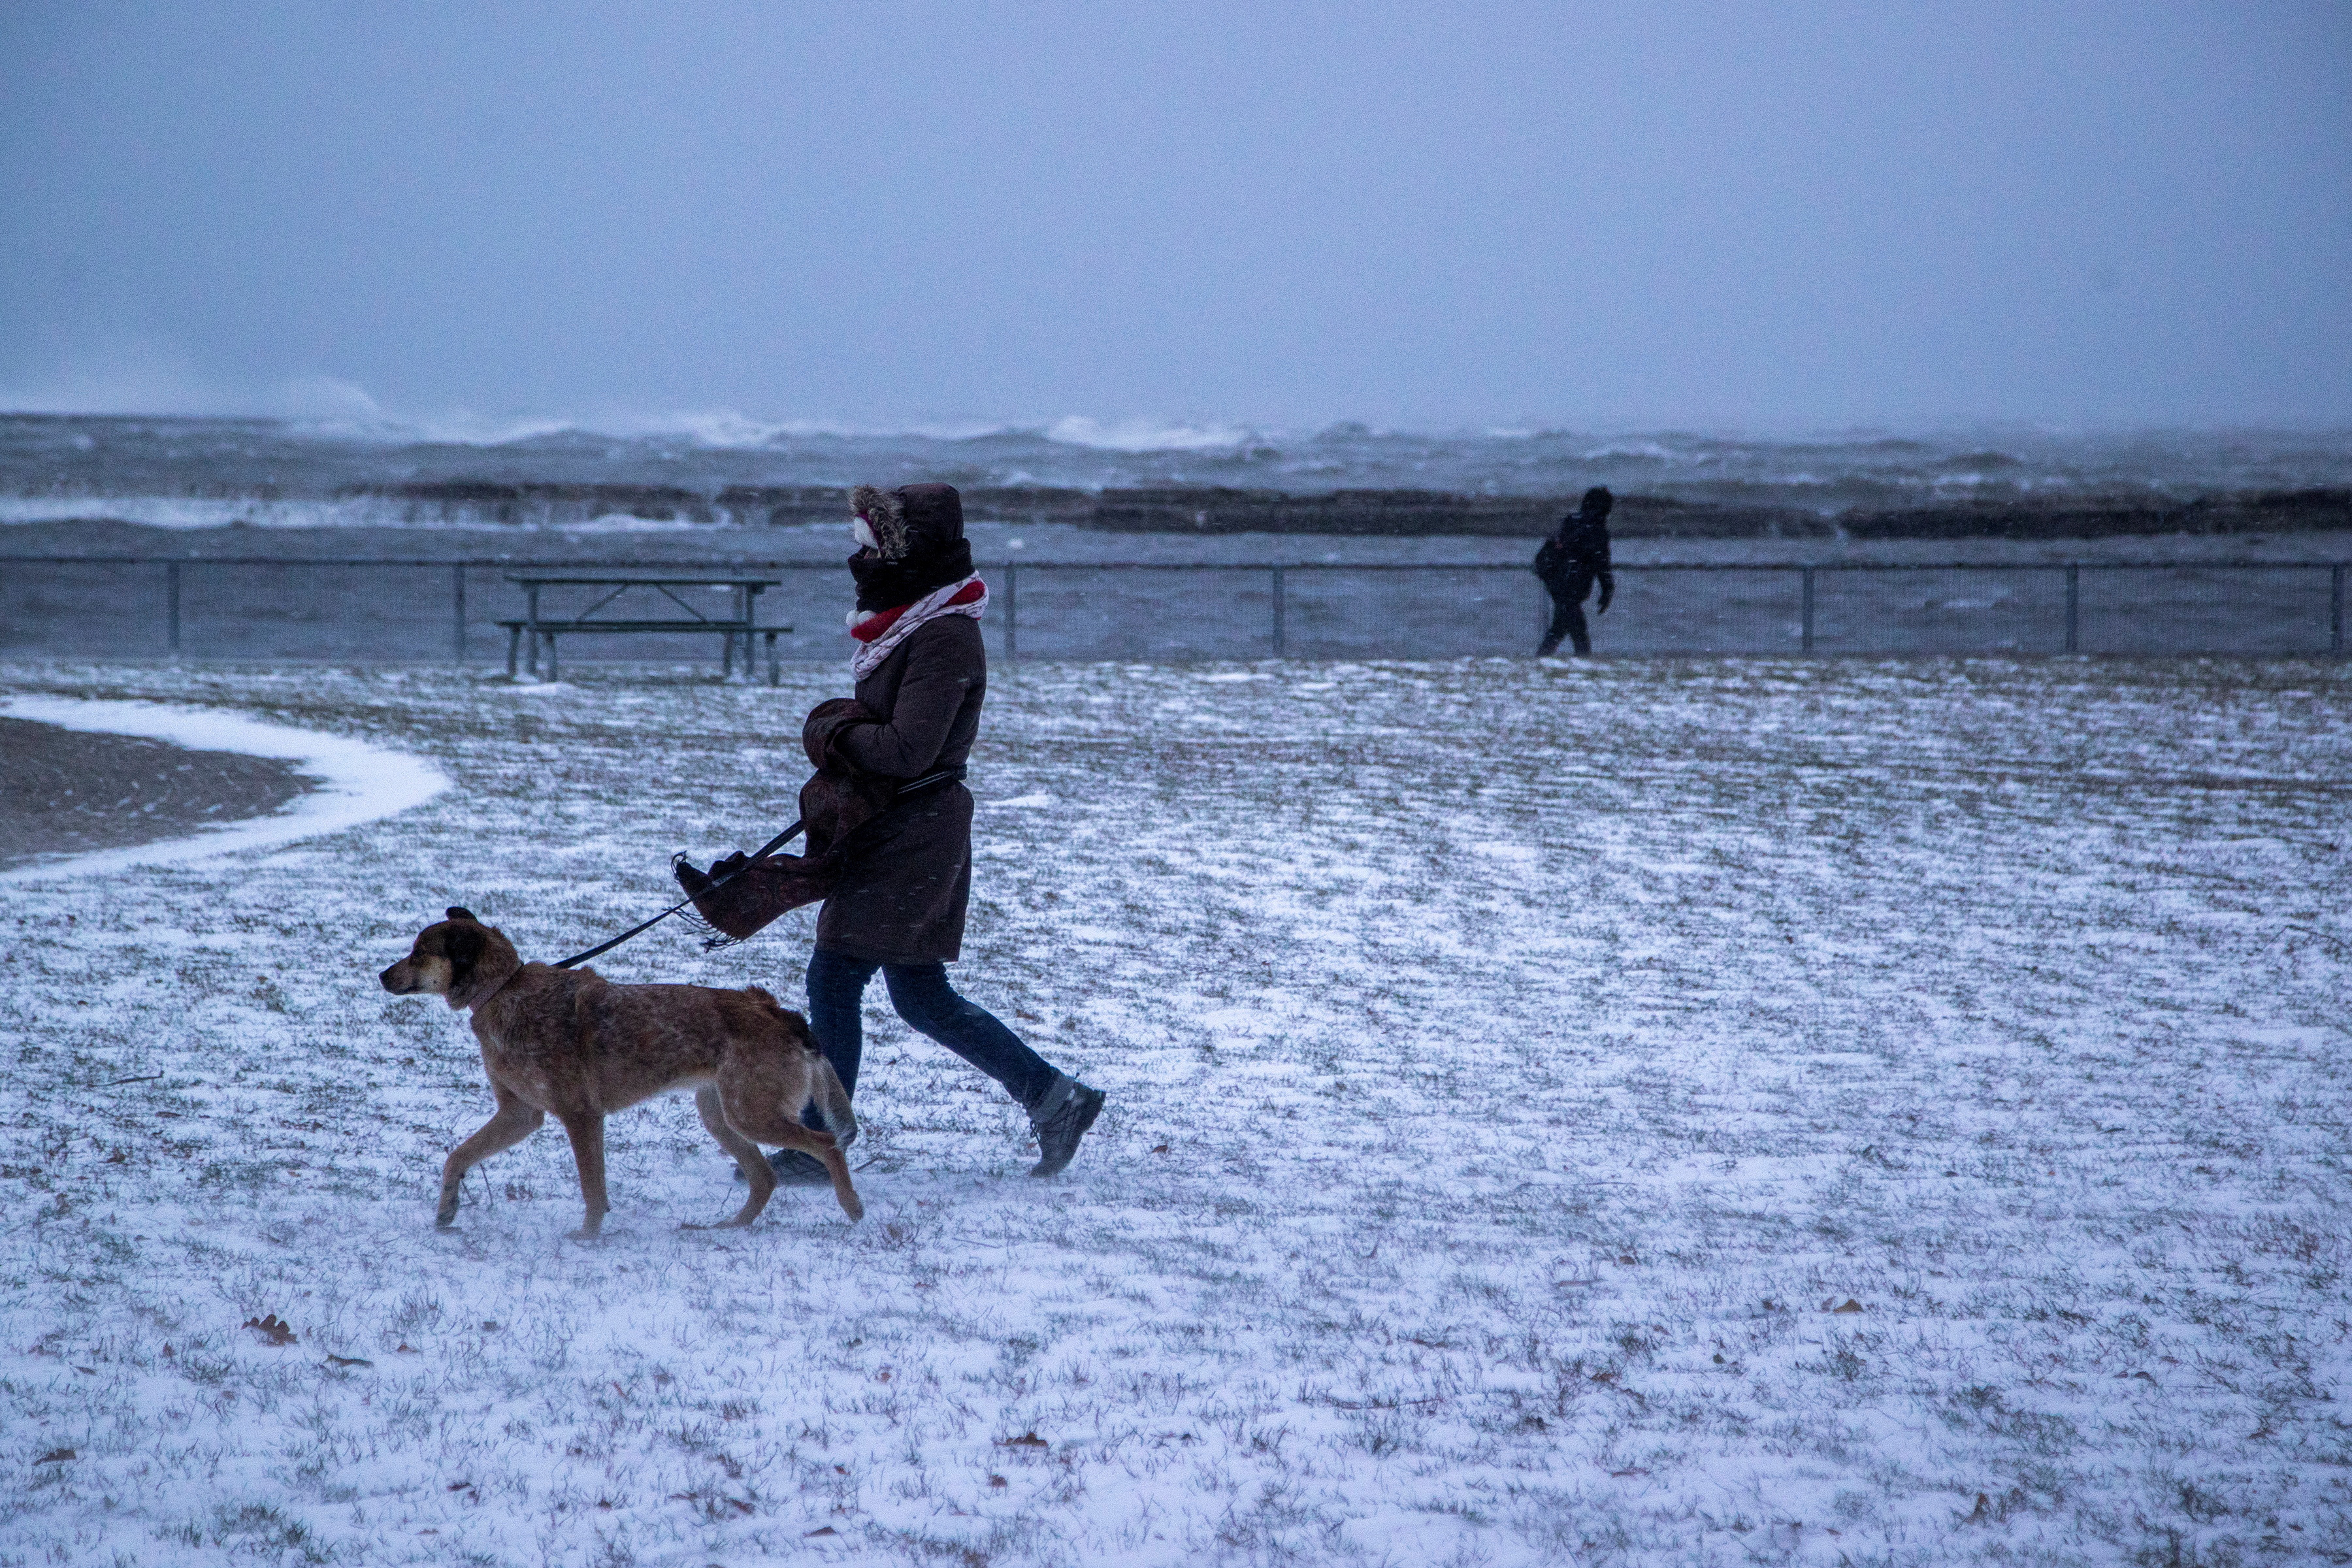 La gente camina junto al lago Ontario durante una tormenta de invierno en Toronto, Ontario, Canadá 23 de diciembre 2022 (REUTERS/Carlos Osorio)